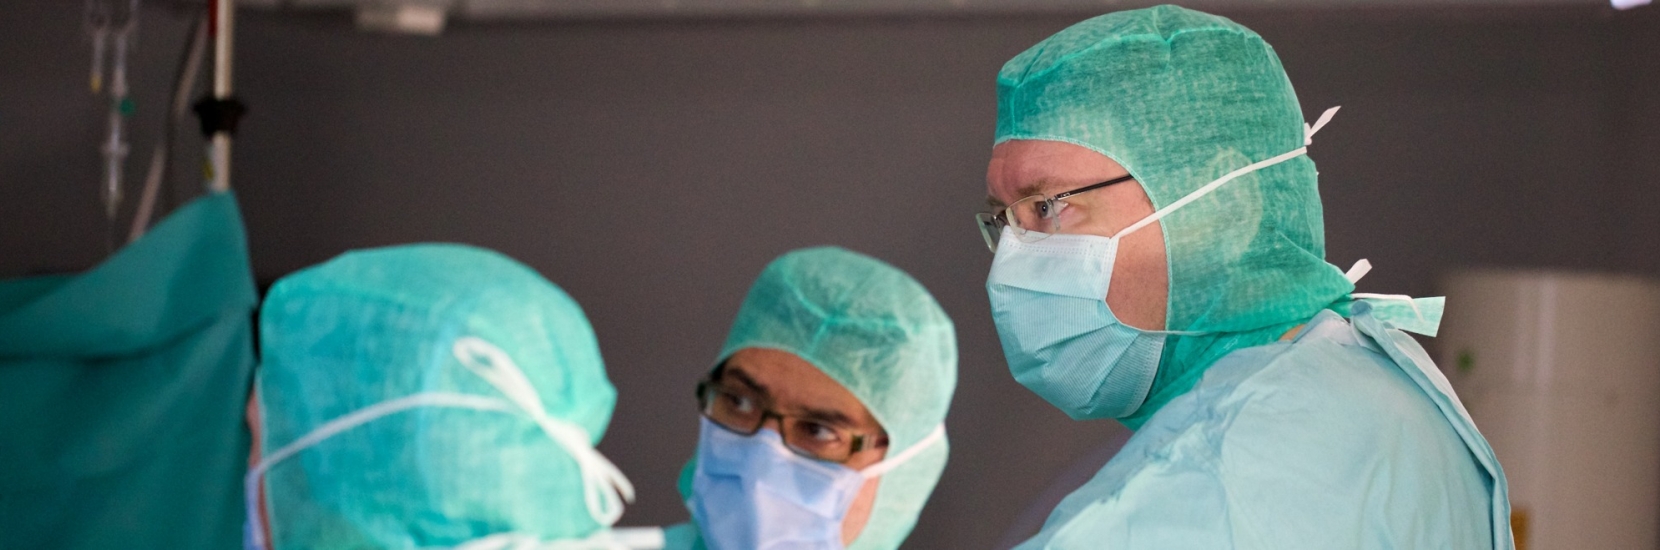 Le Prof. Dr Romain Seil, chirurgien orthopédiste au Centre Hospitalier de Luxembourg, nommé président de la société européenne ESSKA